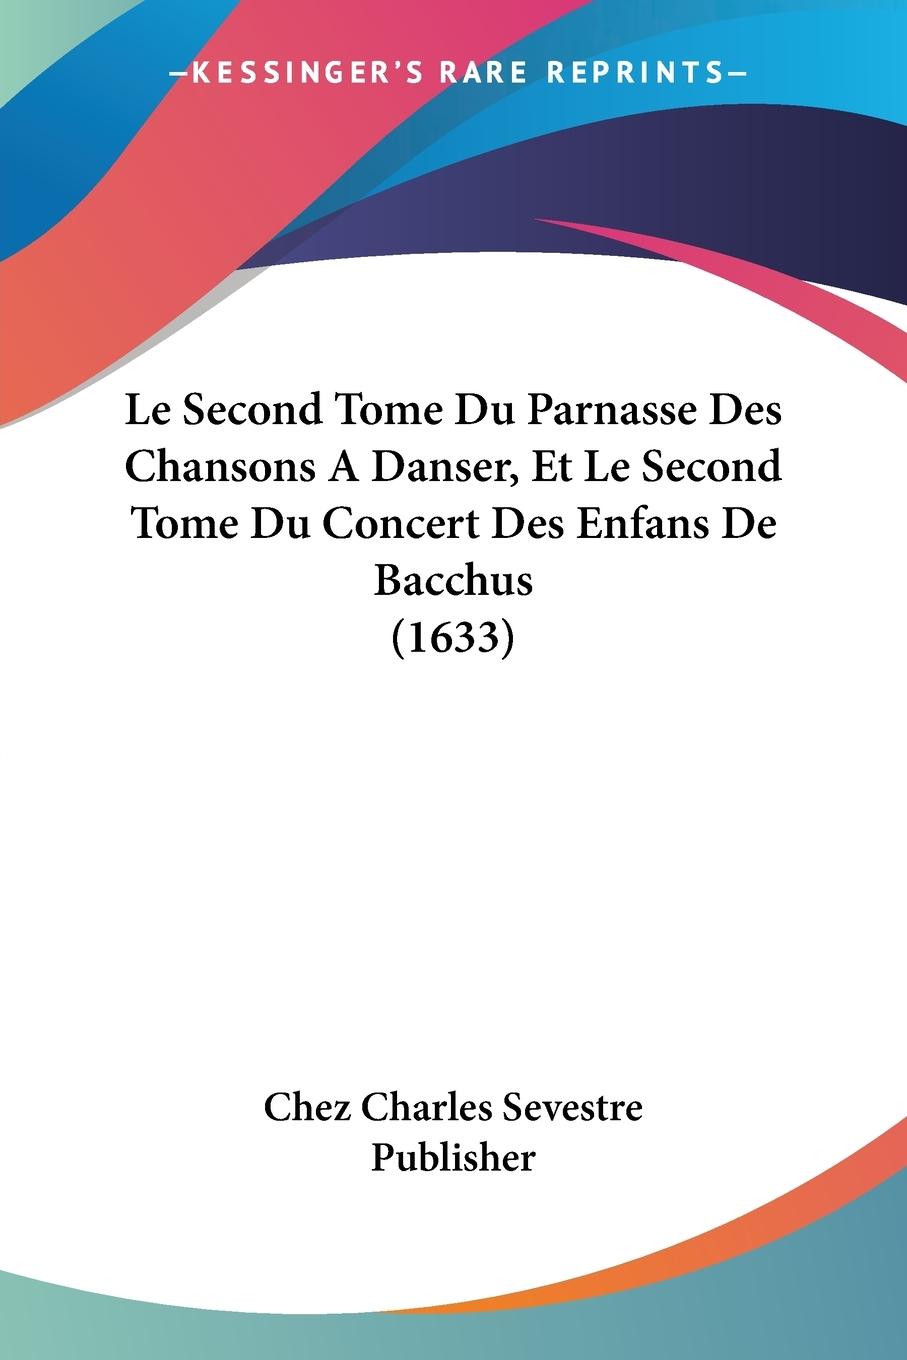 Le Second Tome Du Parnasse Des Chansons A Danser, Et Le Second Tome Du Concert Des Enfans De Bacchus (1633) - Chez Charles Sevestre Publisher